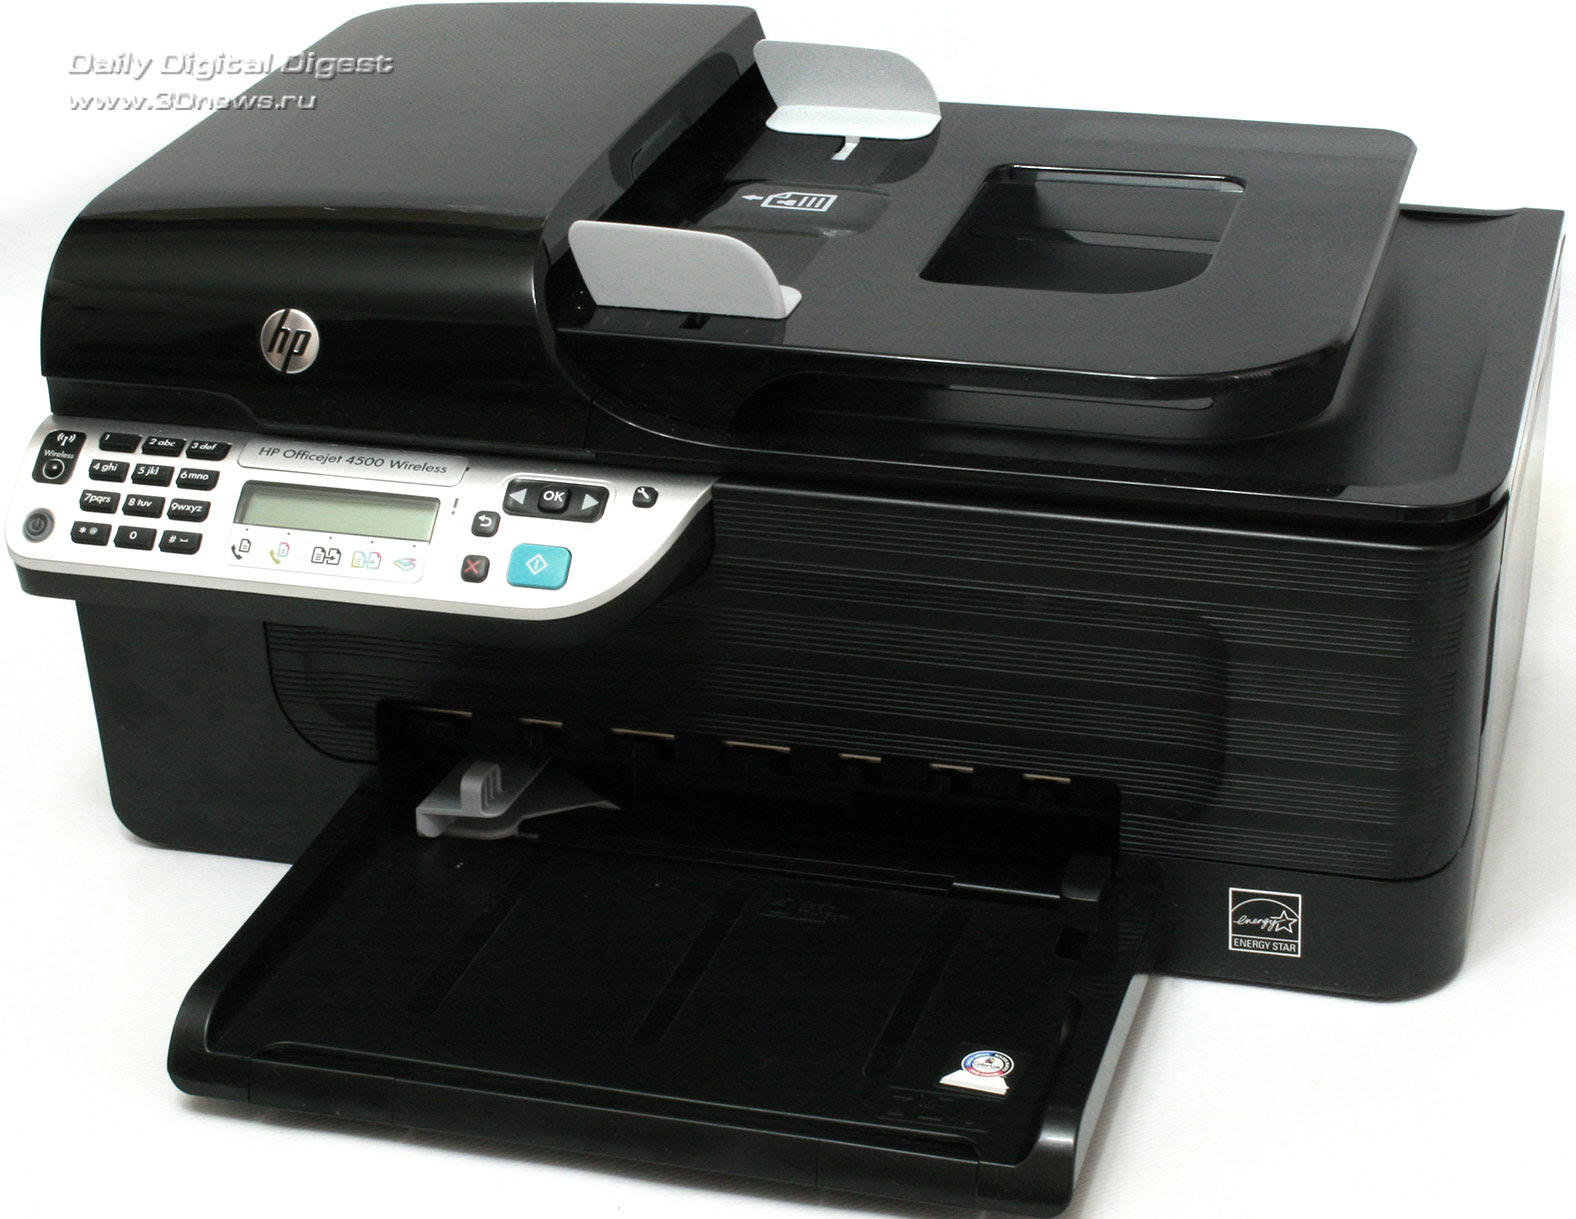 hp officejet 4500 g510g m scanner software download